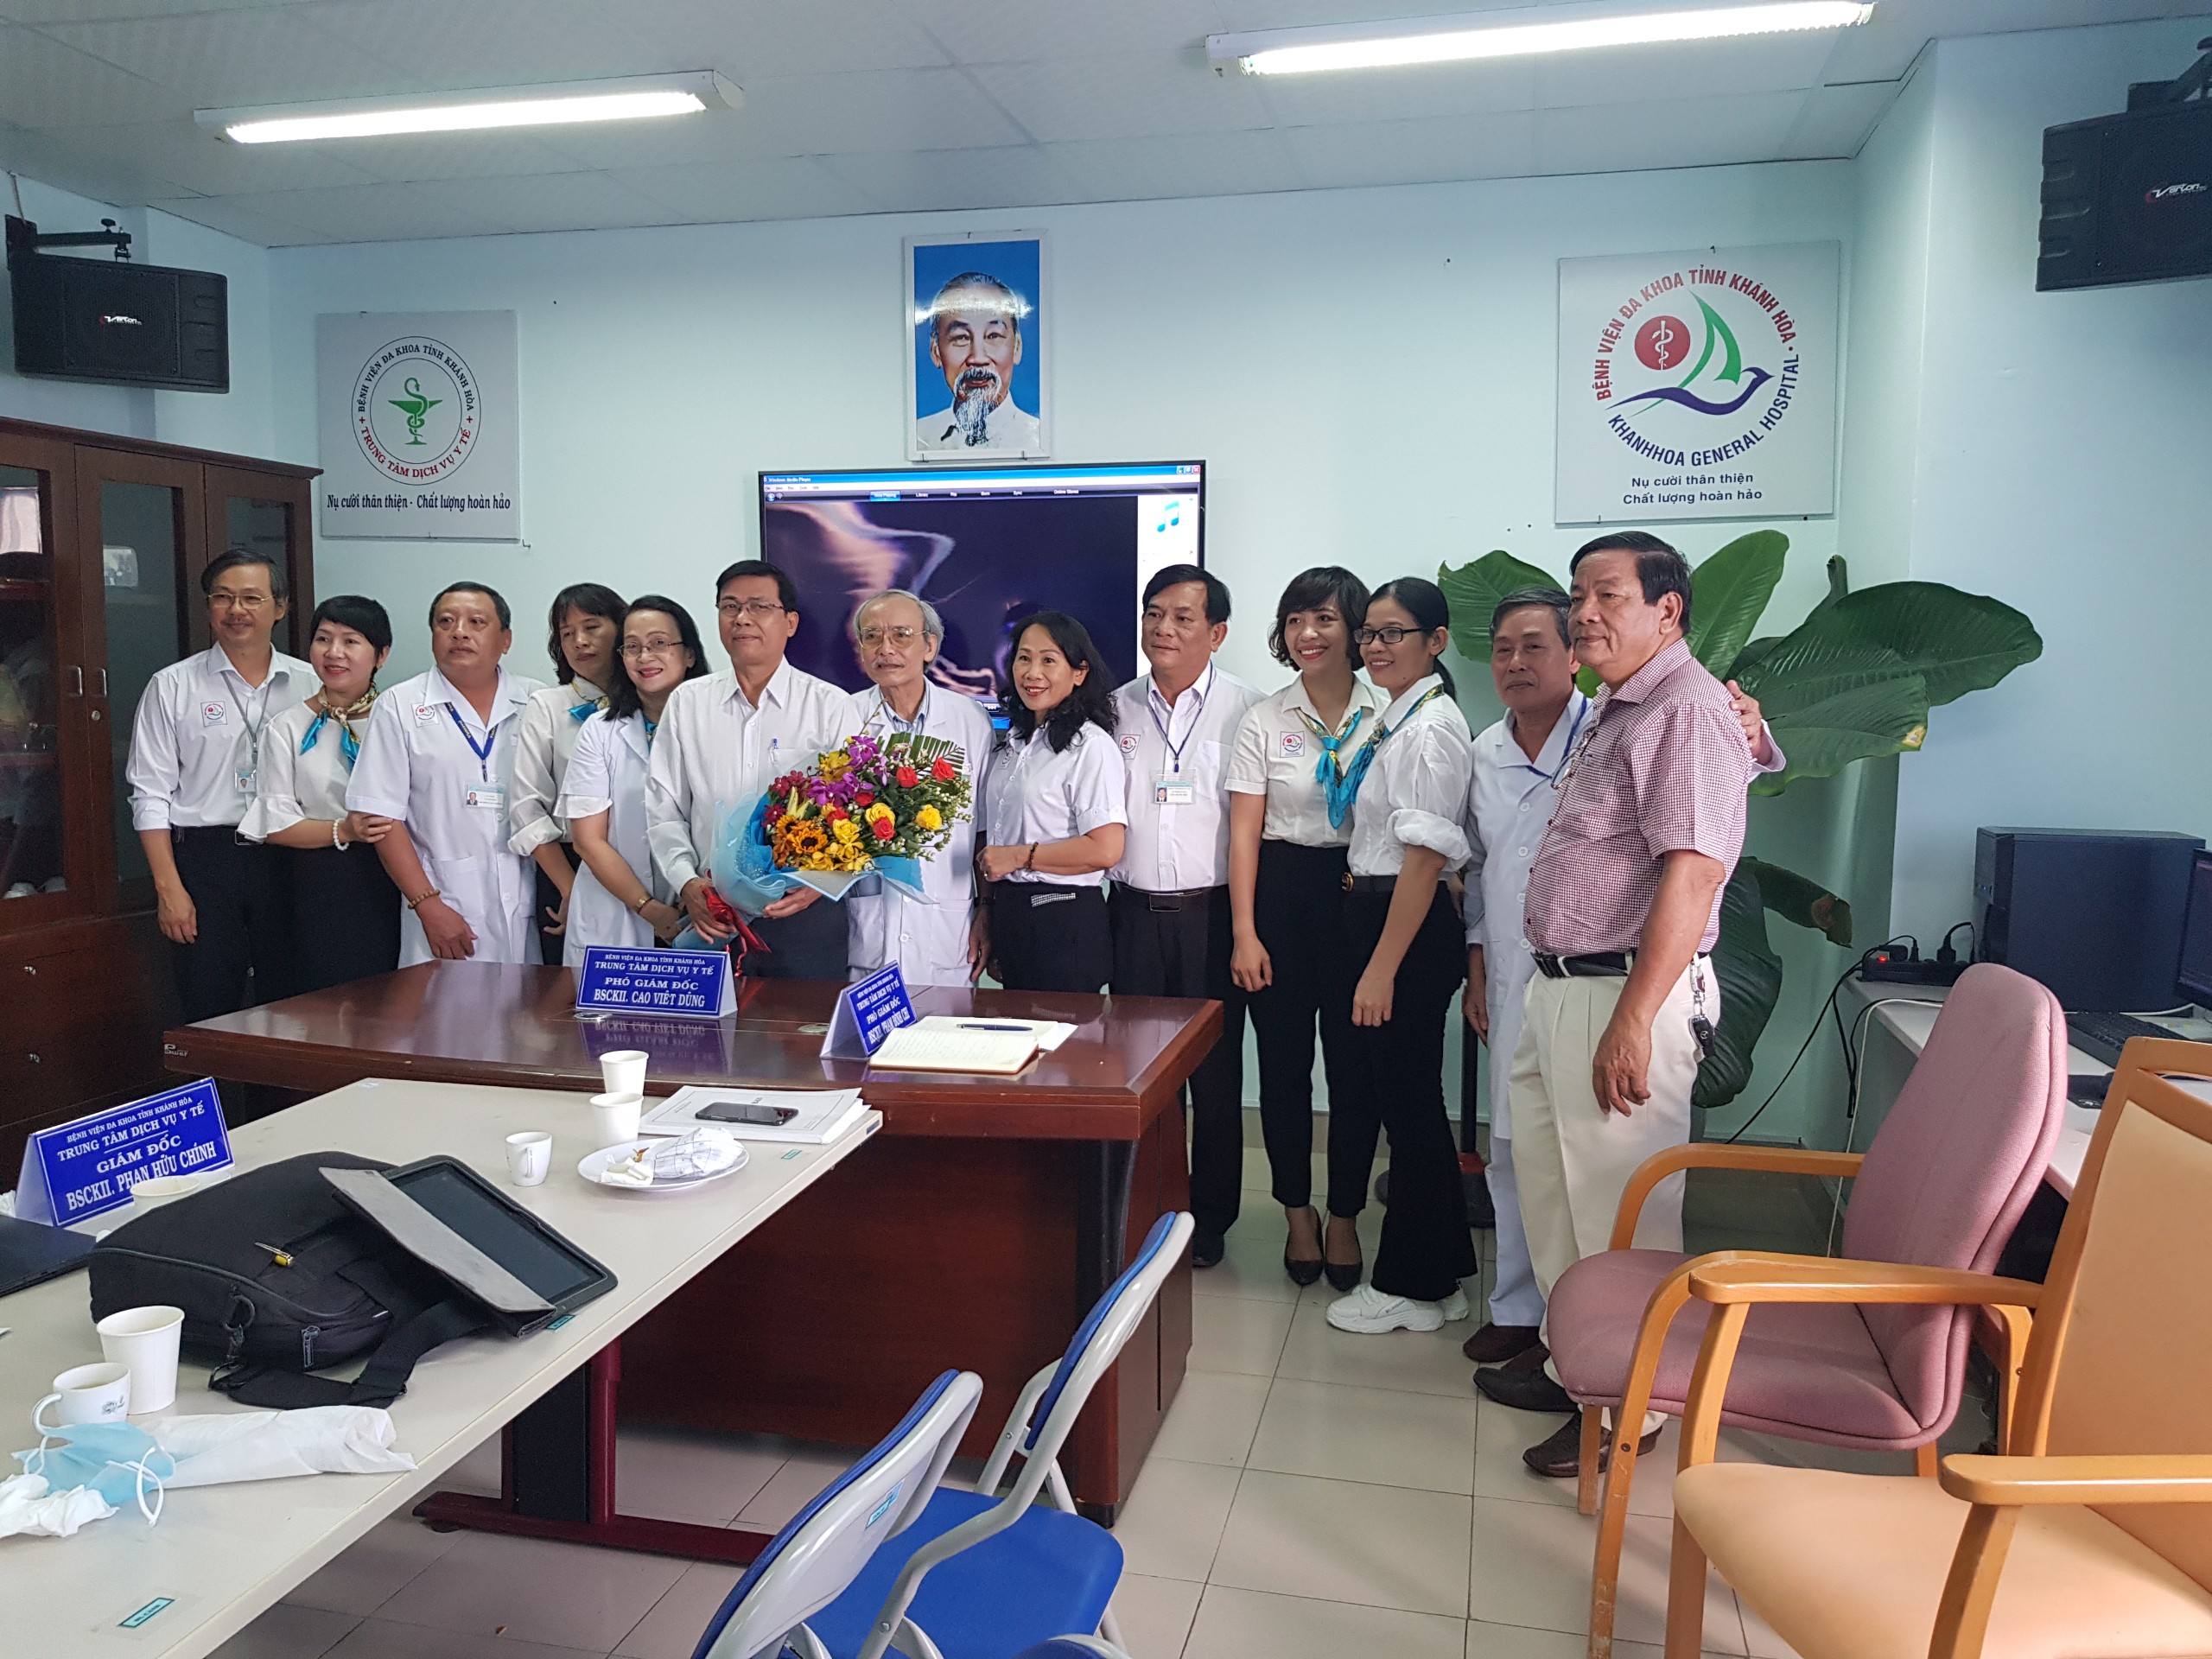 Chúc mừng BSCK2 Cao Việt Dũng Thầy thuốc Ưu tú đã hoàn thành xuất sắc nhiệm vụ 1